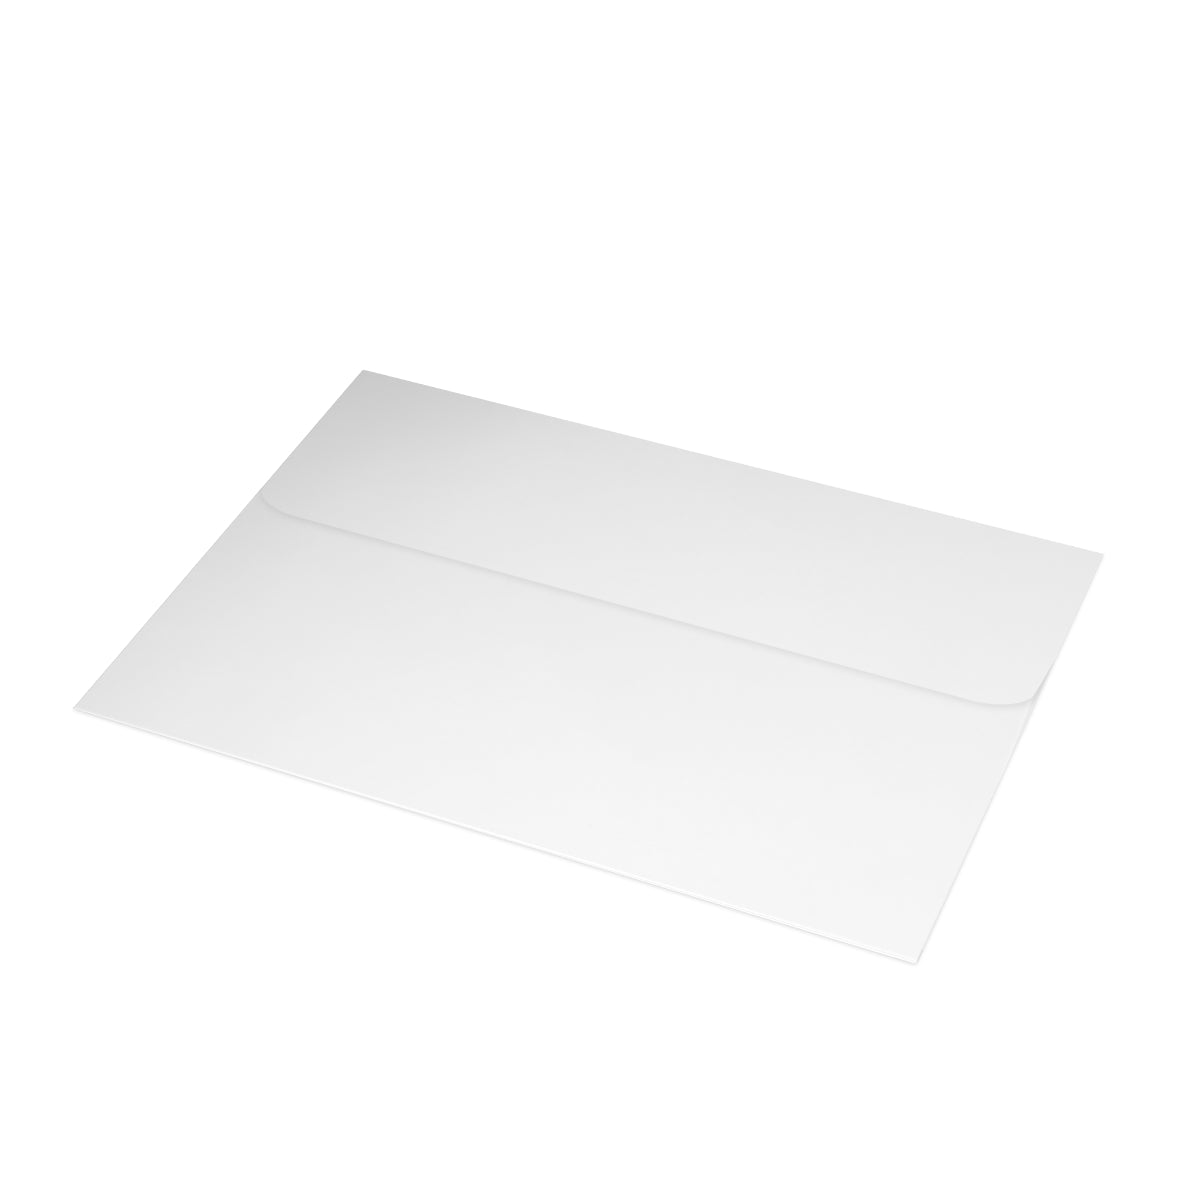 Narragansett Folded Matte Notecards + Envelopes (10pcs)